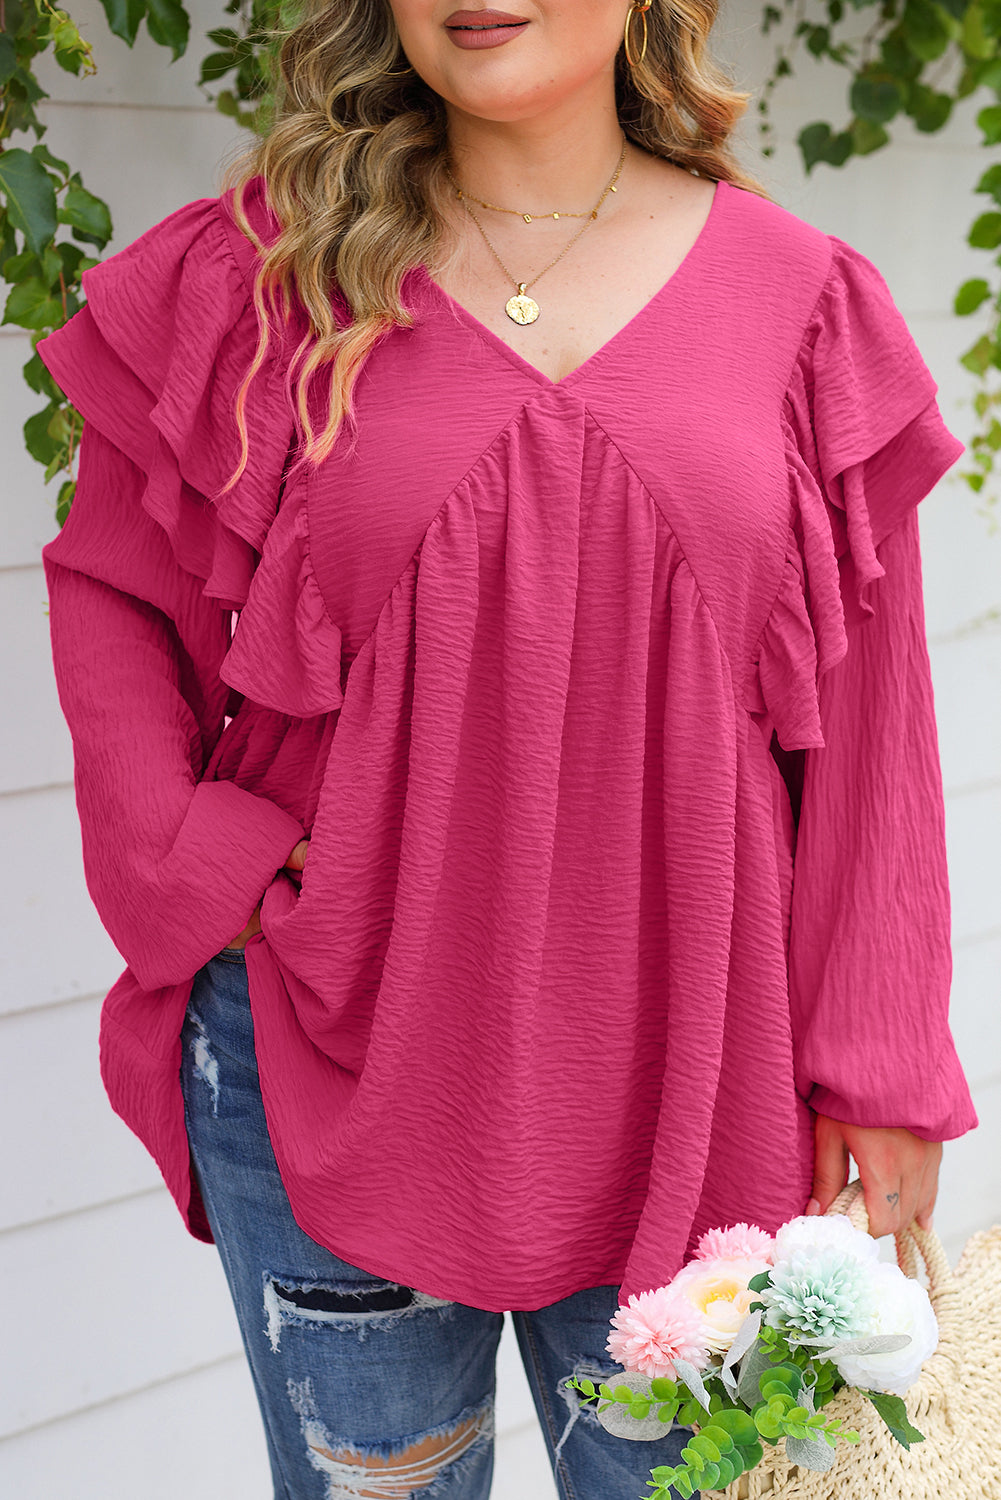 Rožnata bluza velike velikosti z naboranim V izrezom